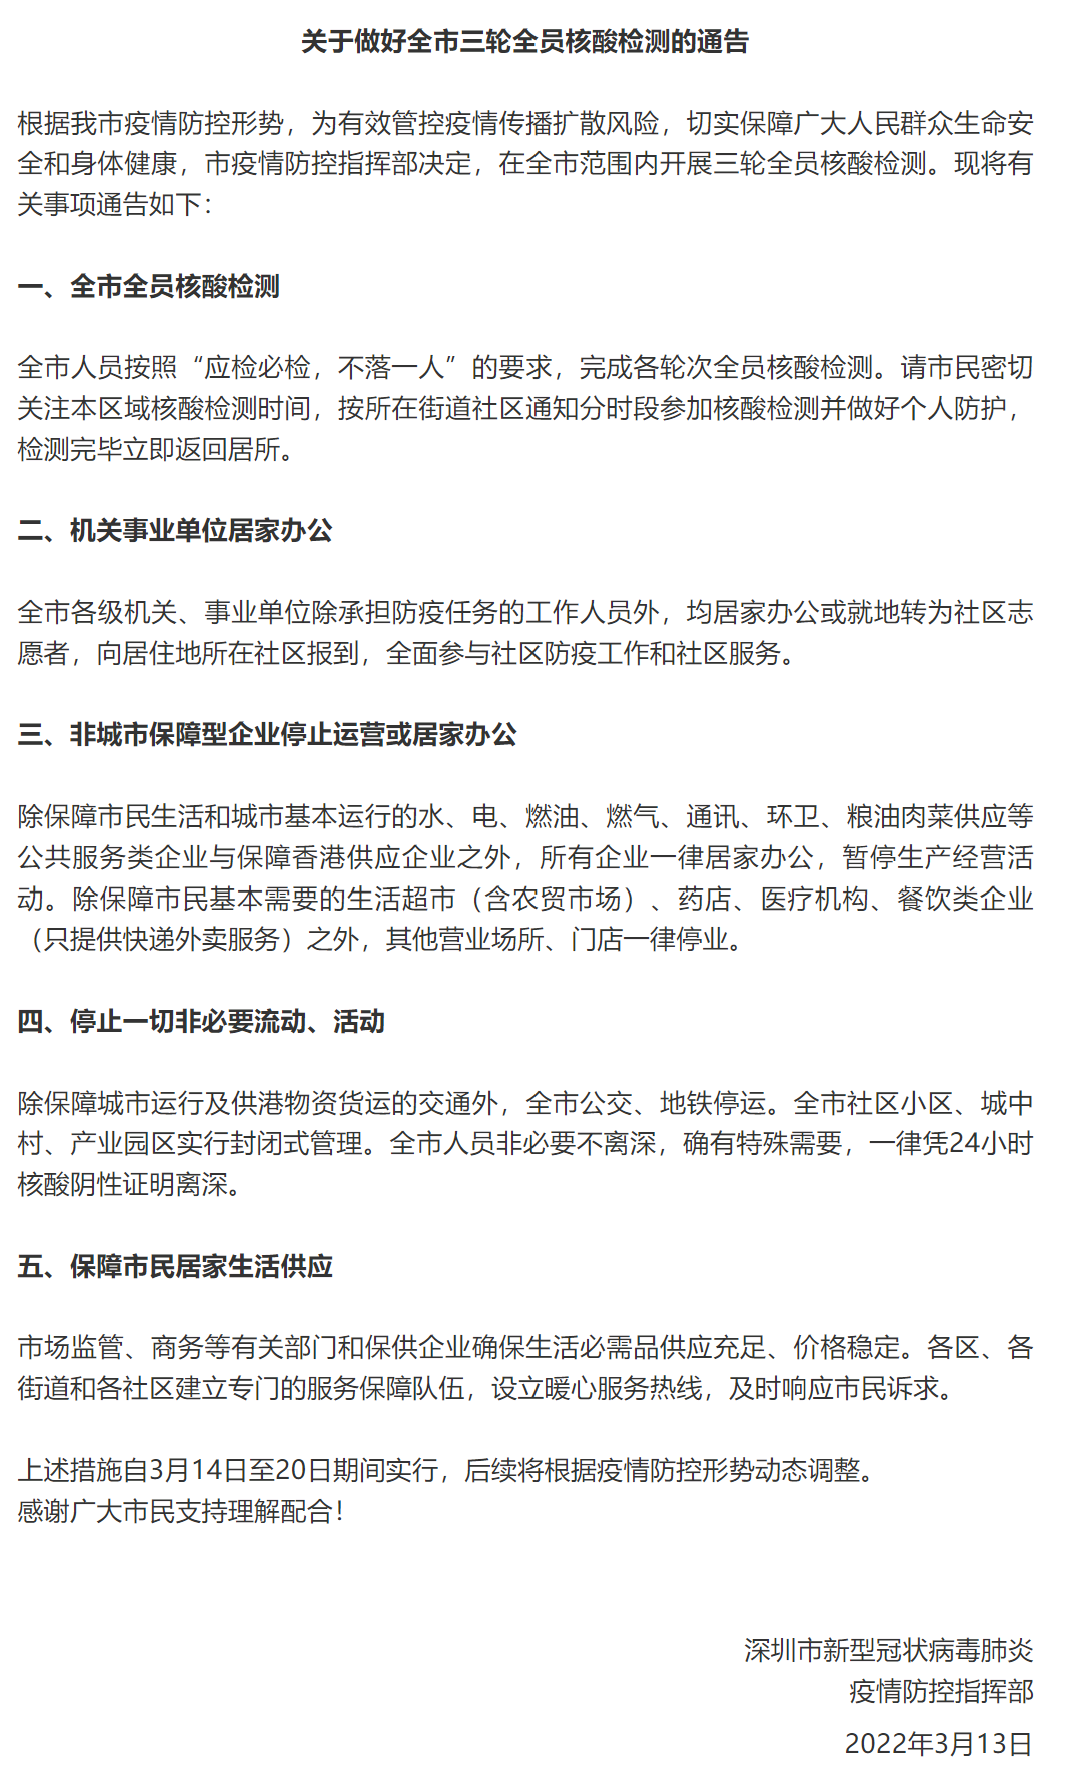 深圳“暂停”一周，多家基金公司表示正常运作且已做应急预案部署，个别岗位已做特殊安排